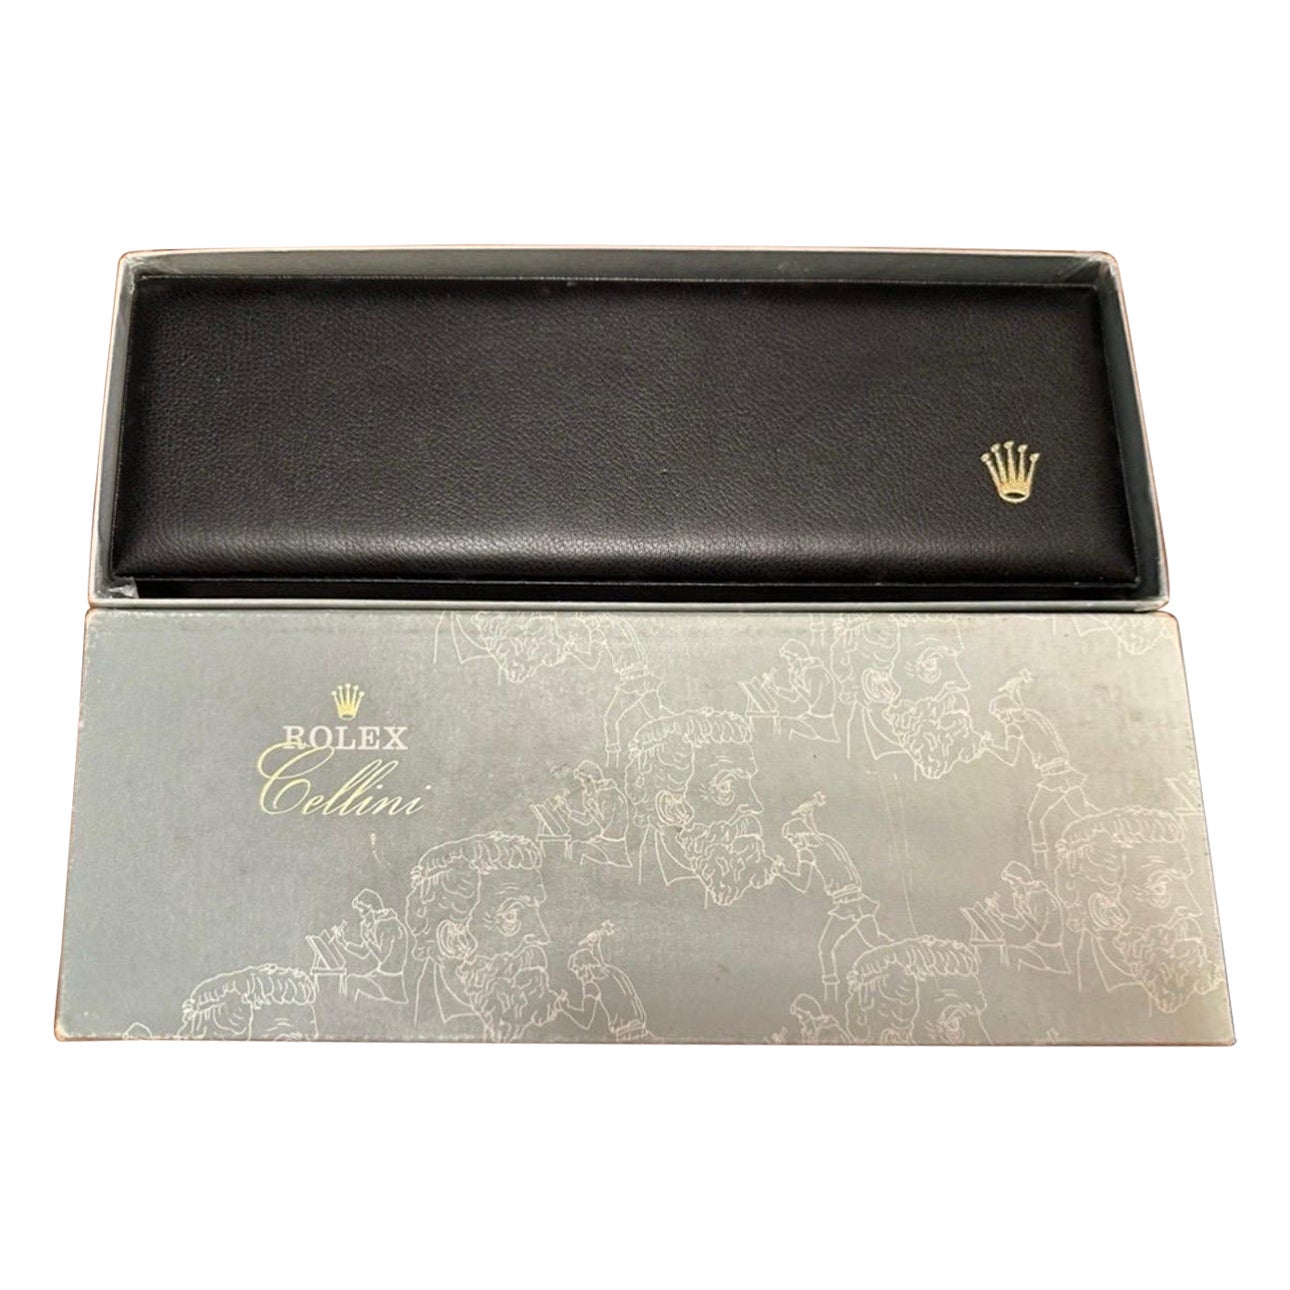 Boîte de montres Rolex Cellini complète avec boîte extérieure. Cuir noir crème intérieur neuf en vente